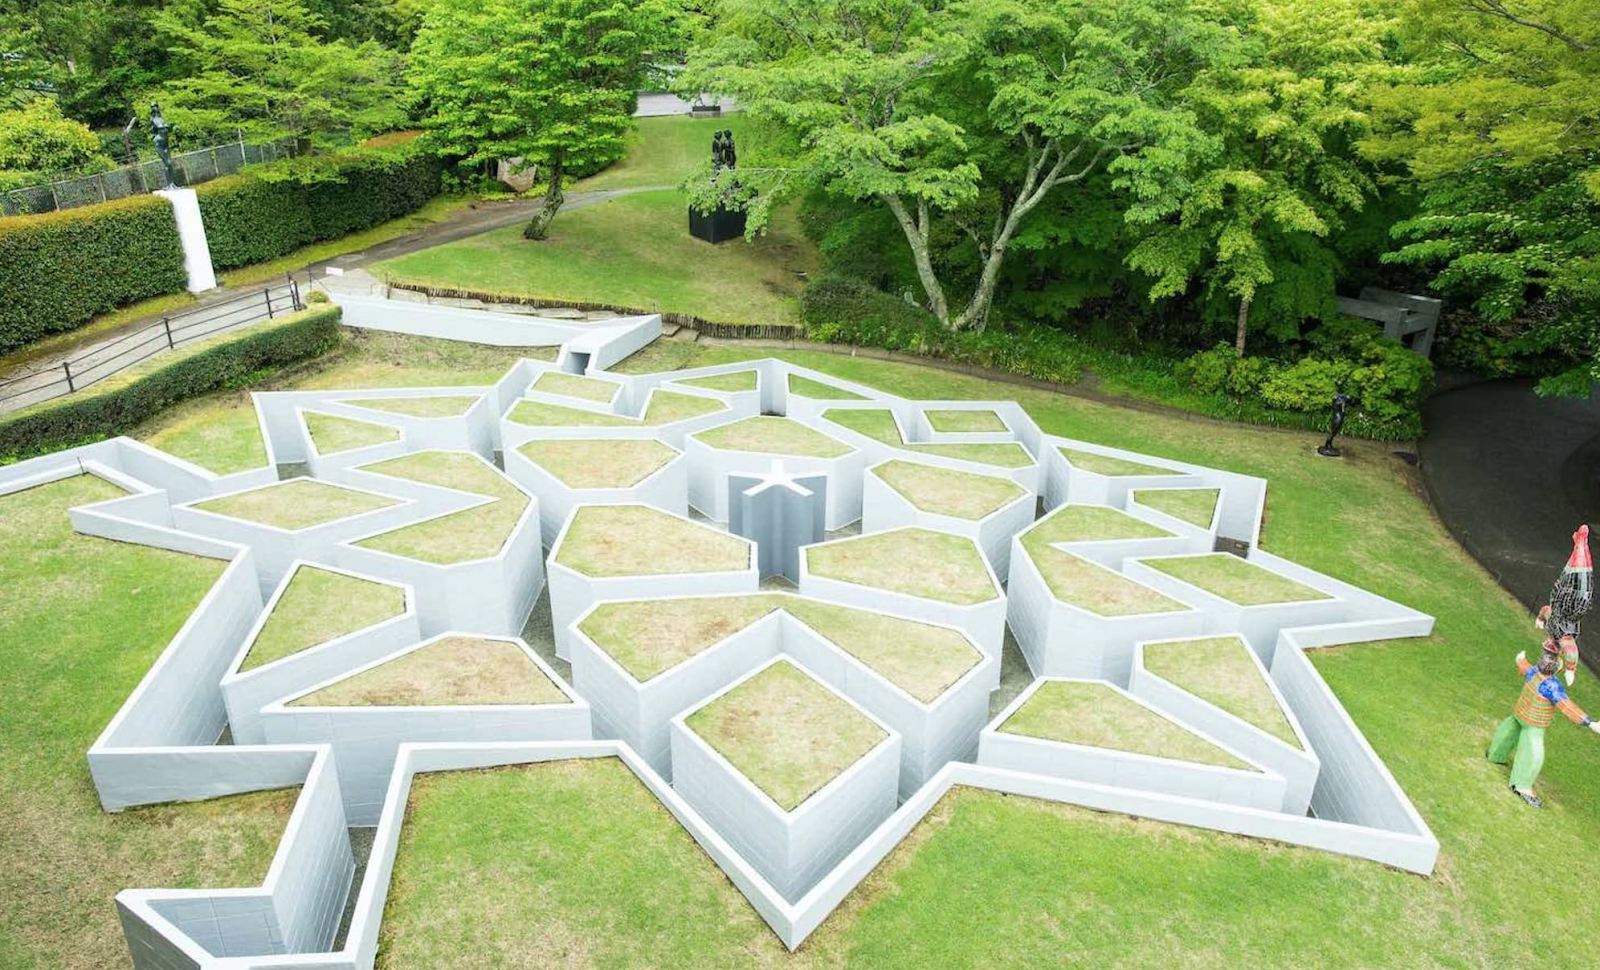 5.雕刻之森美術館（神奈川）｜特色：周圍自然環境